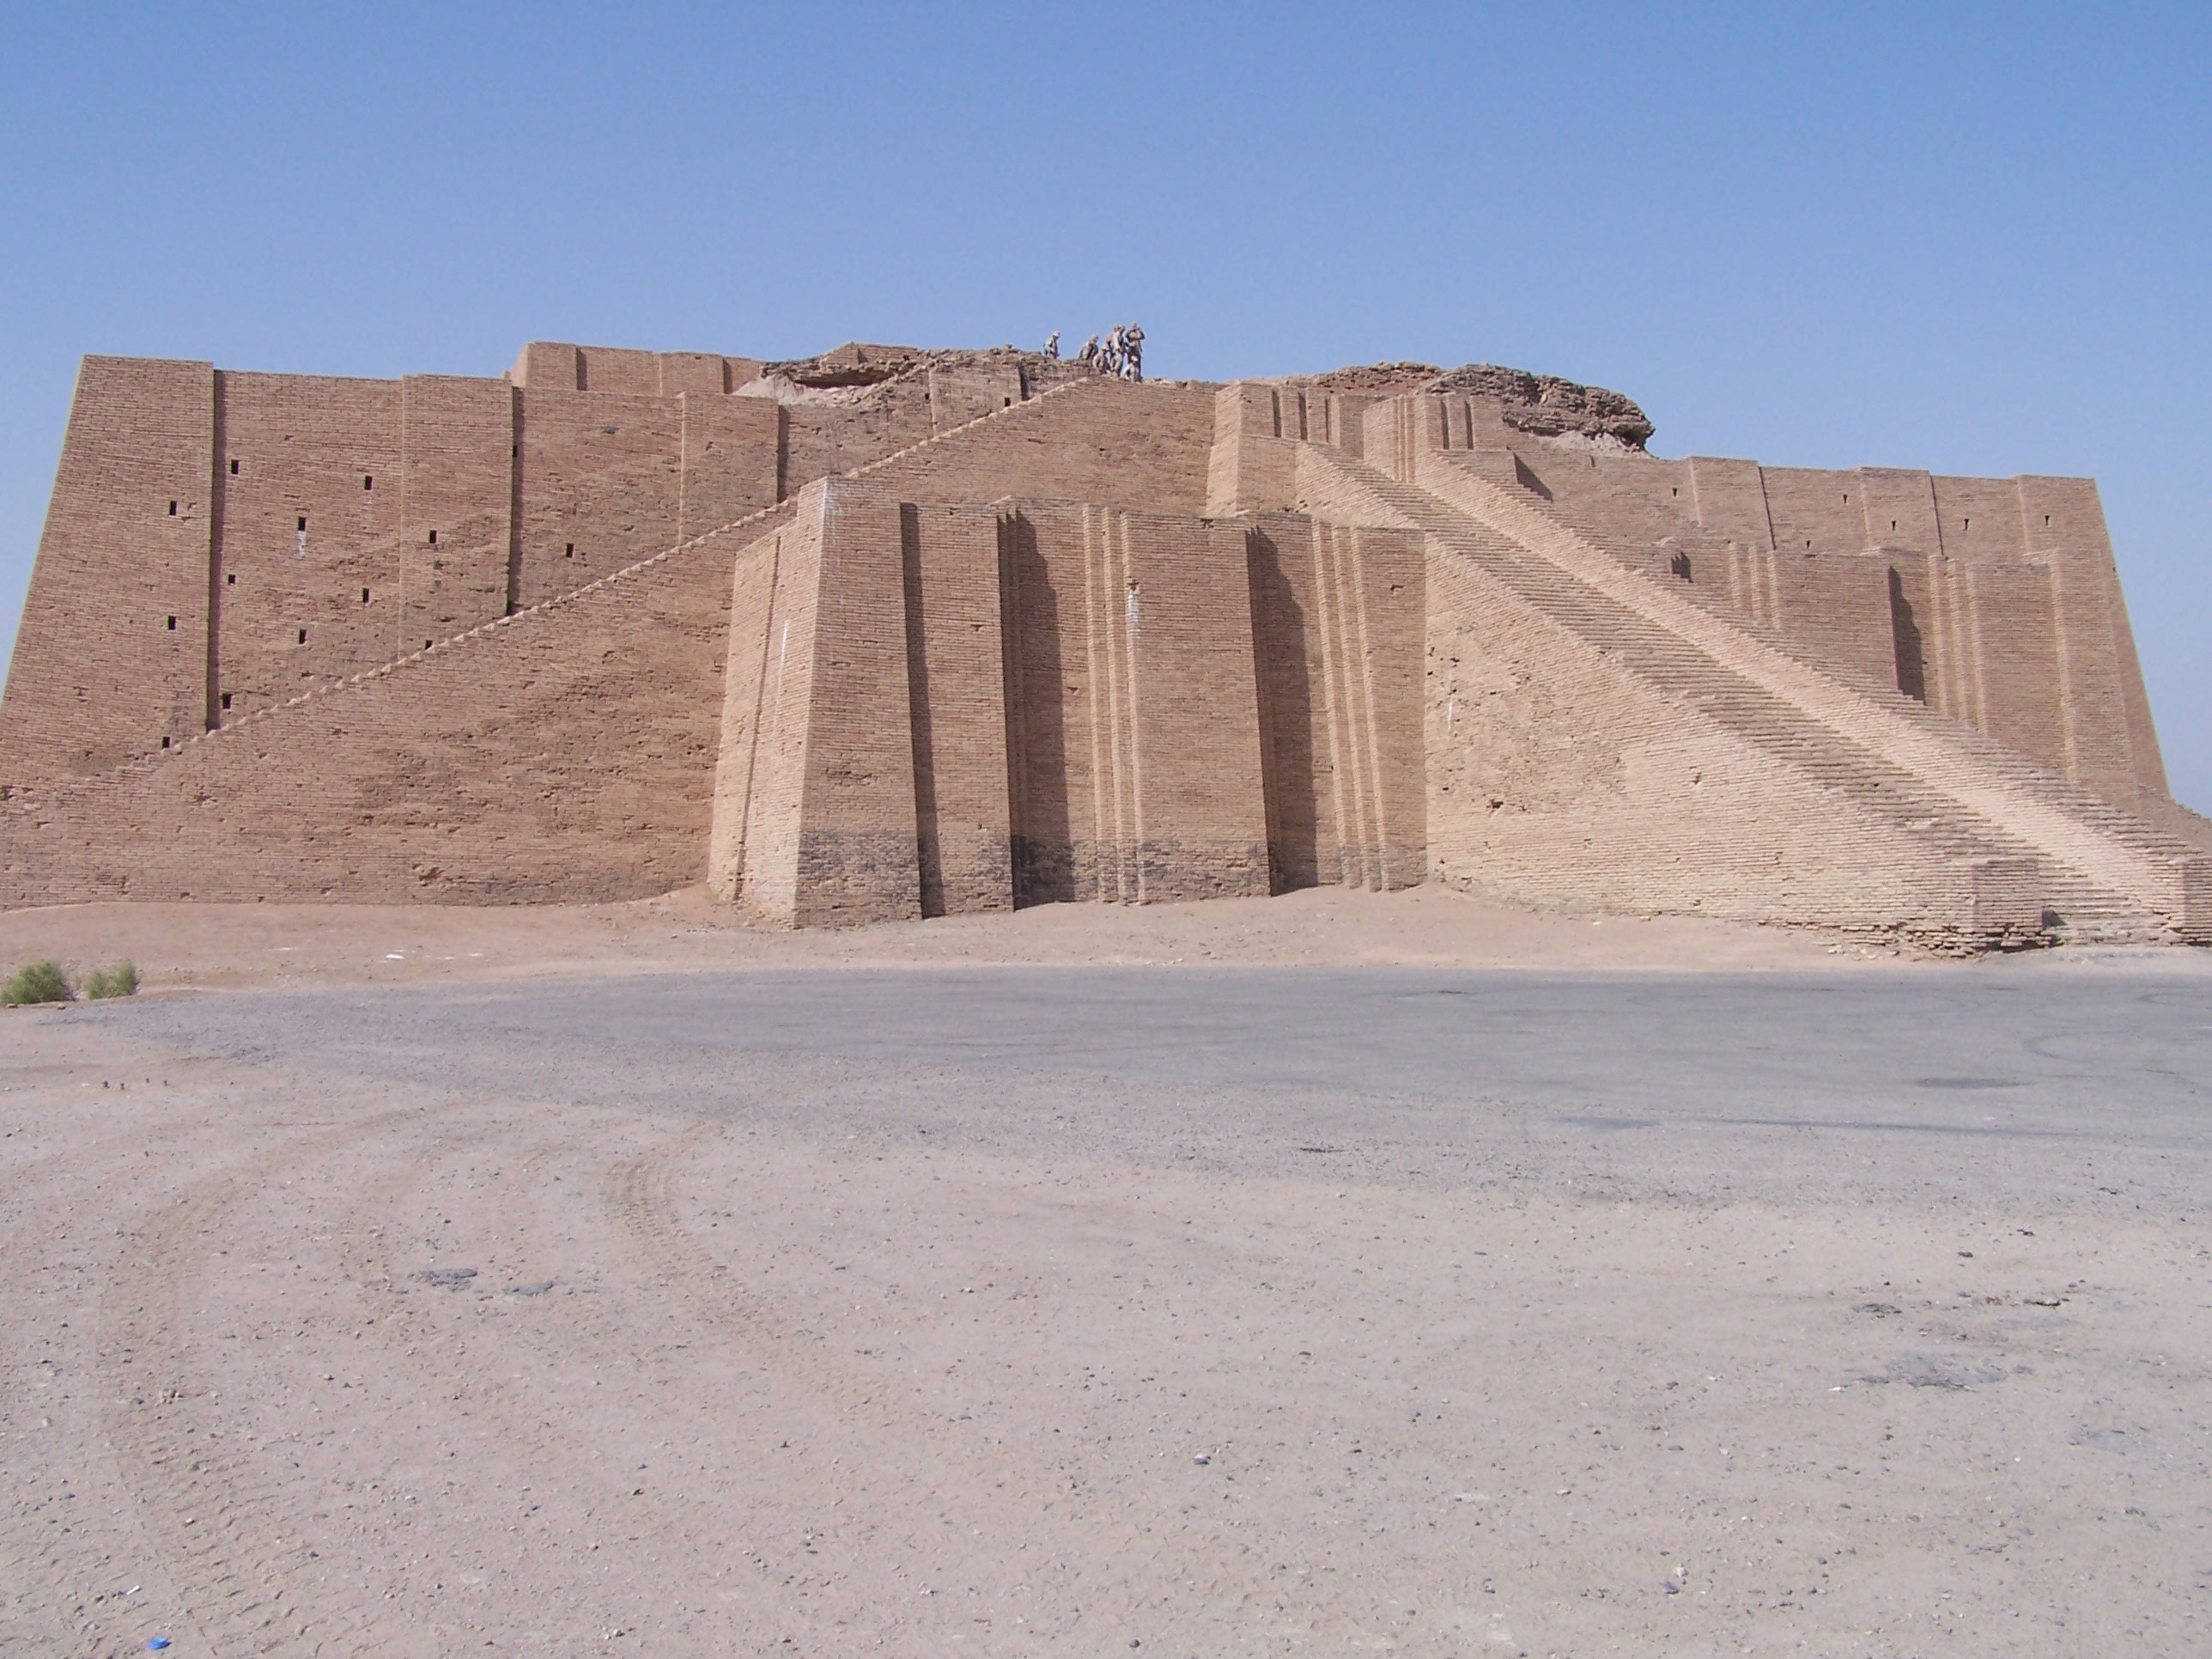 http://upload.wikimedia.org/wikipedia/commons/9/93/Ancient_ziggurat_at_Ali_Air_Base_Iraq_2005.jpg